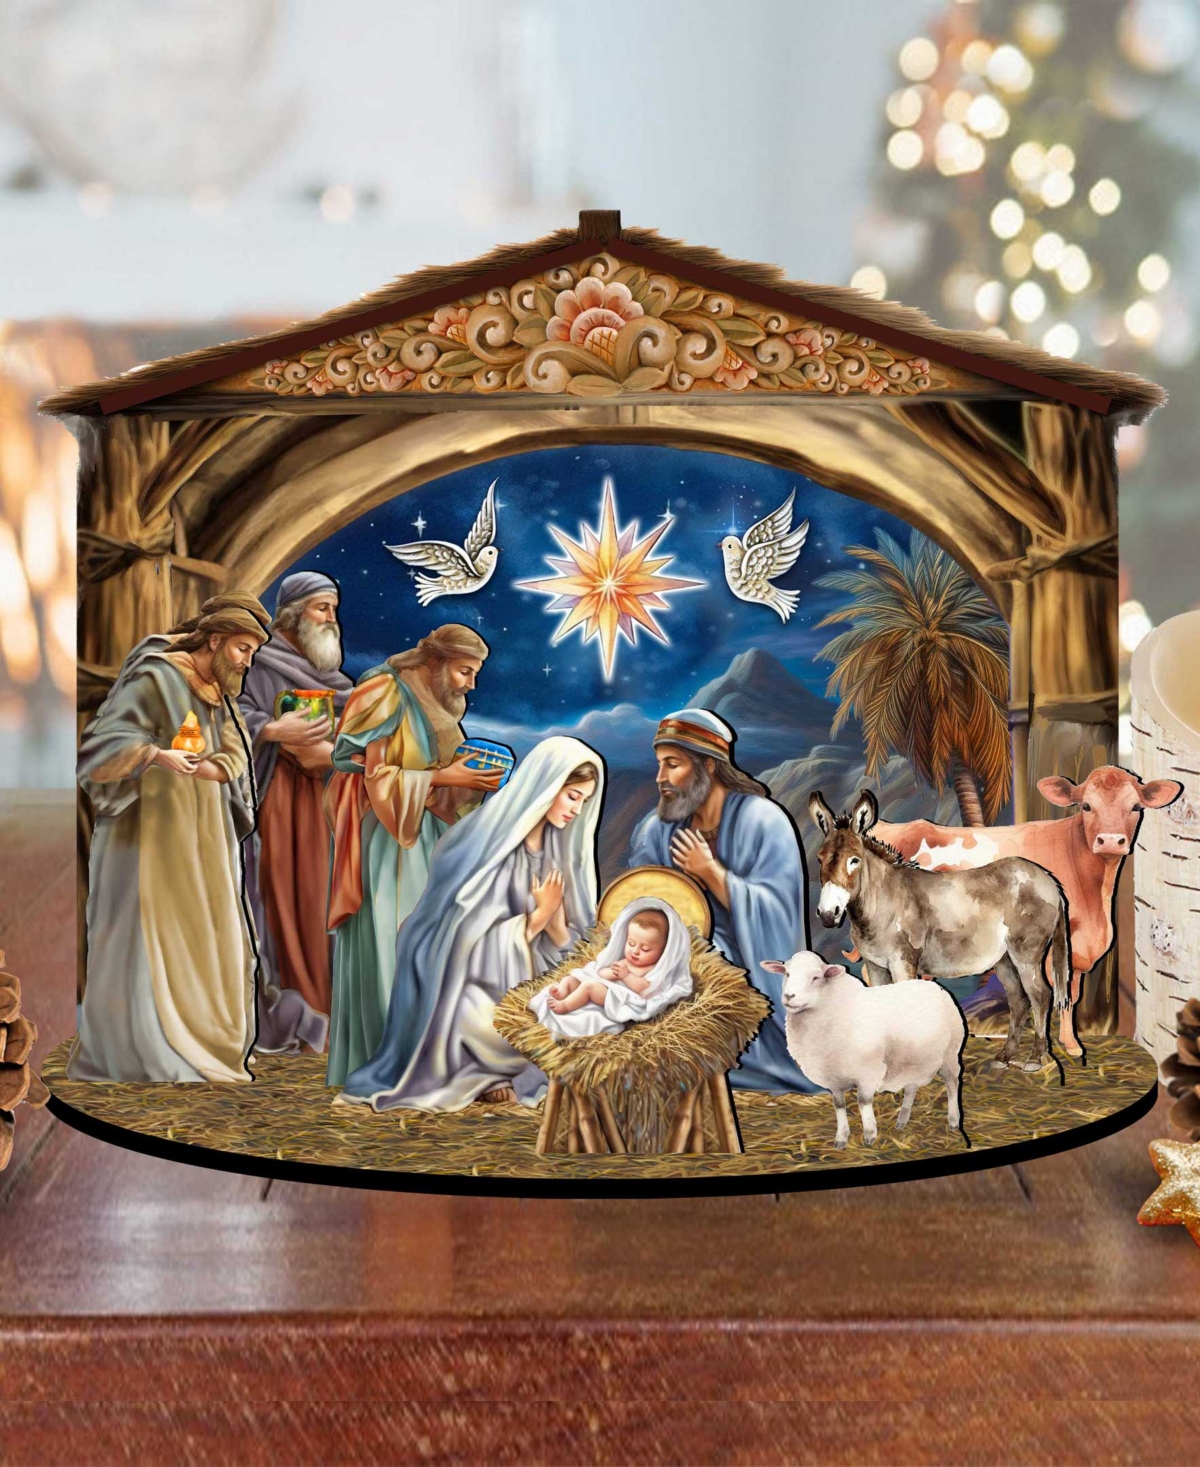 Designocracy The Birth Of Jesus Christmas Nativity Scene Village 12" Mantel Decor G. Debrekht In Multi Color